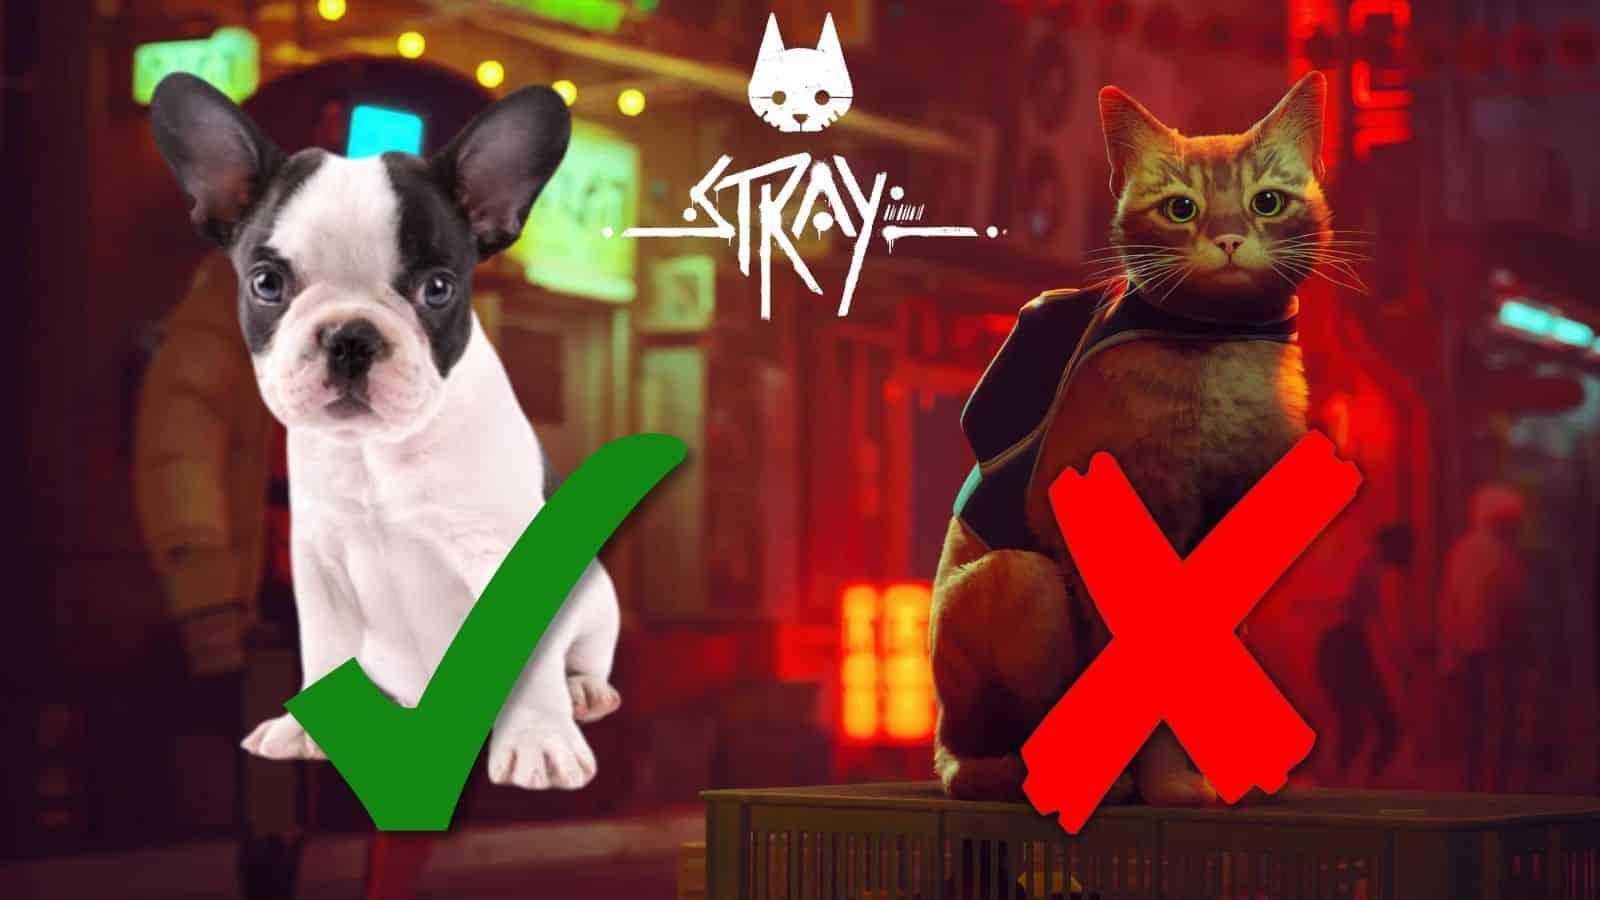 stray french bulldog check and x header image